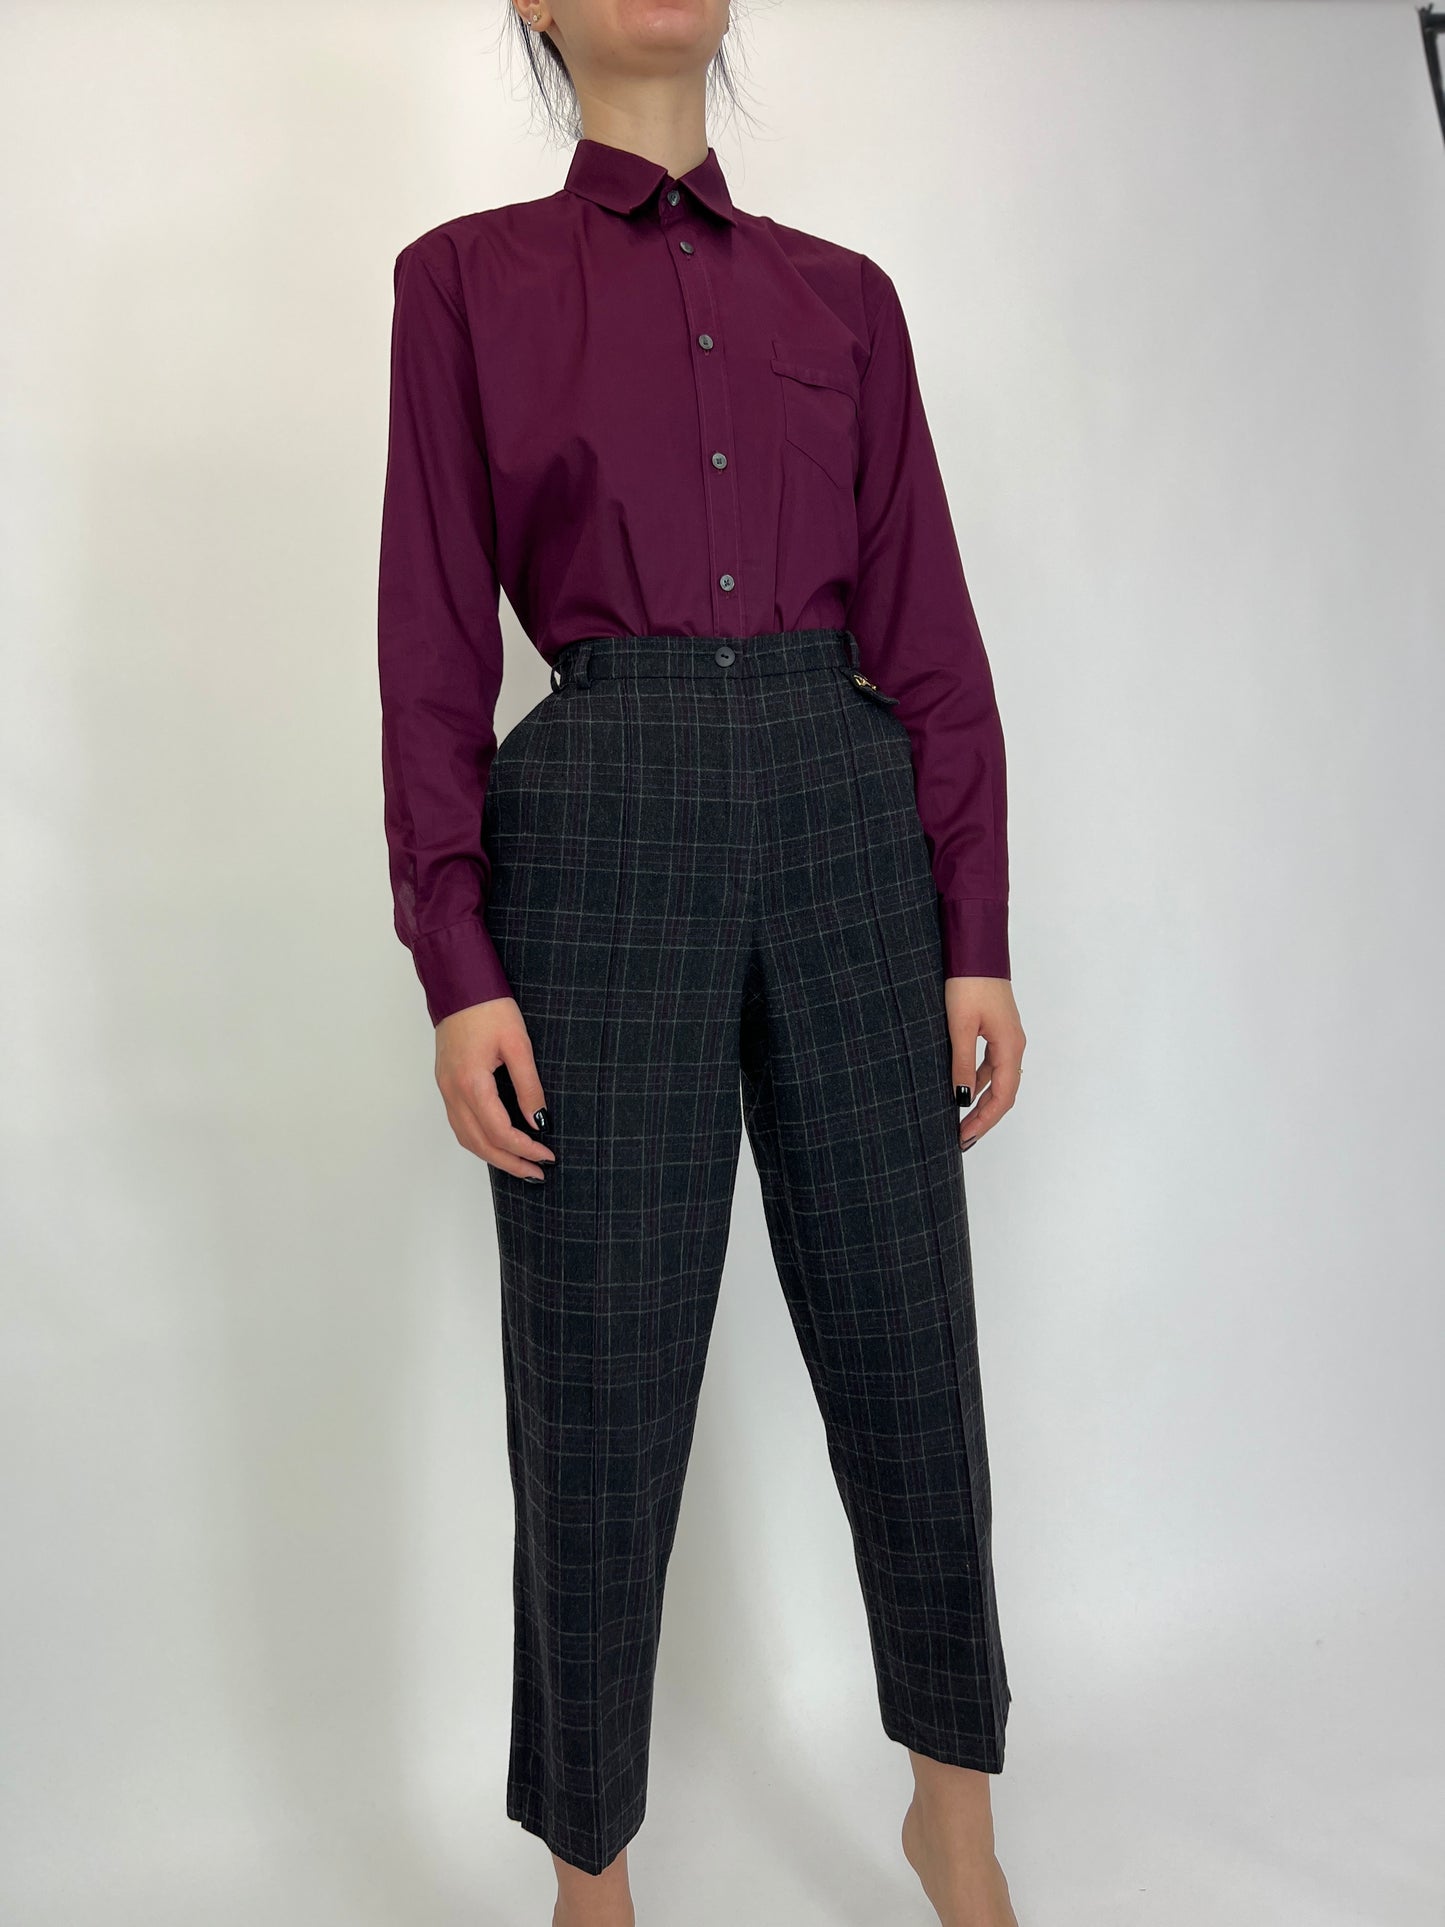 Pantaloni din lana fina cu carouri aubergine și talie elastică